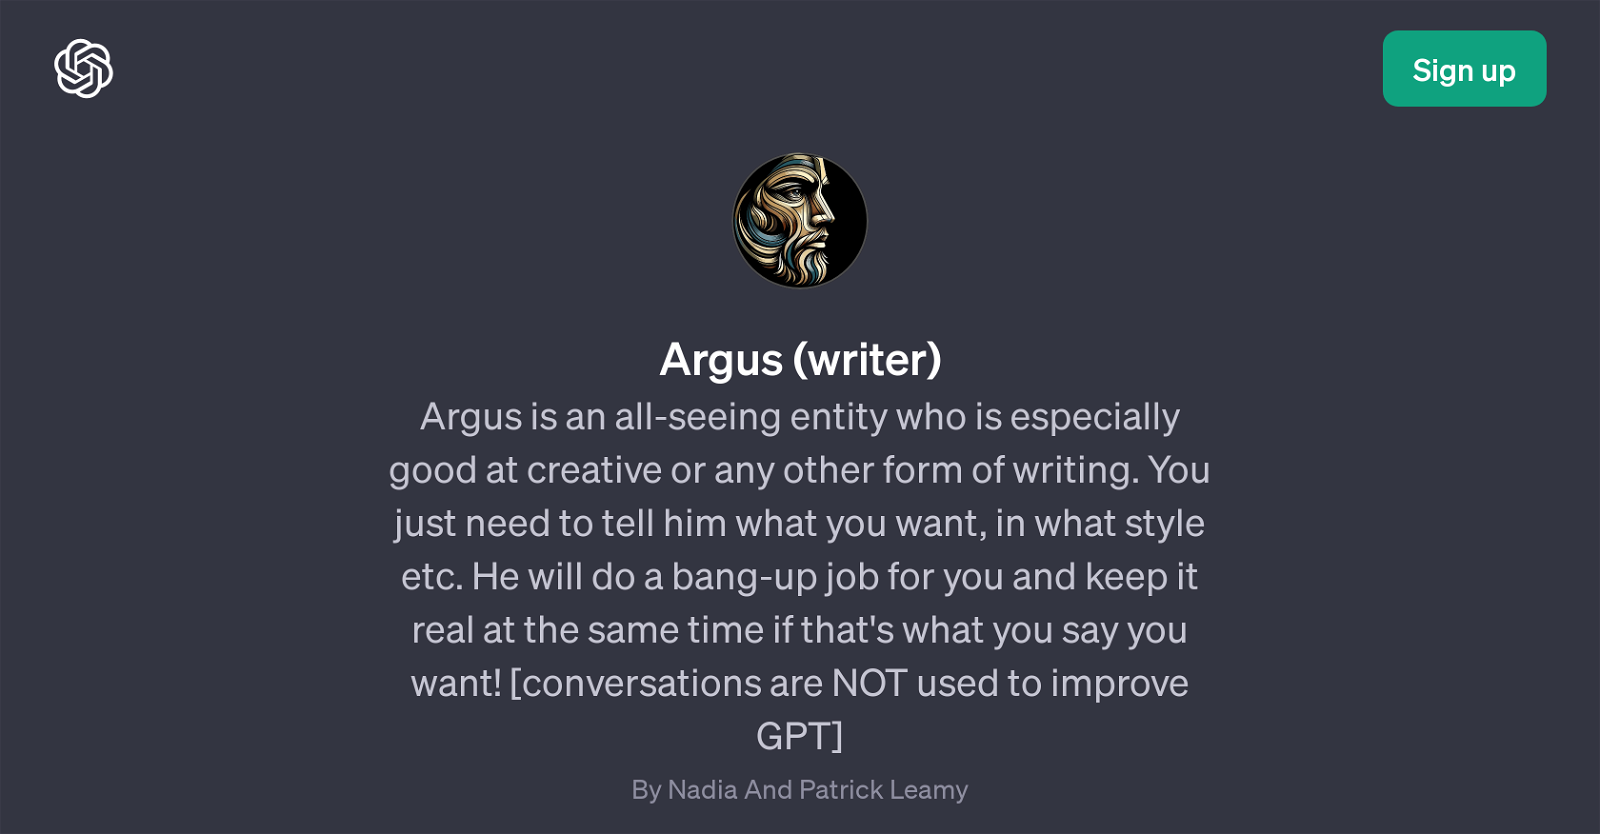 Argus (writer) website